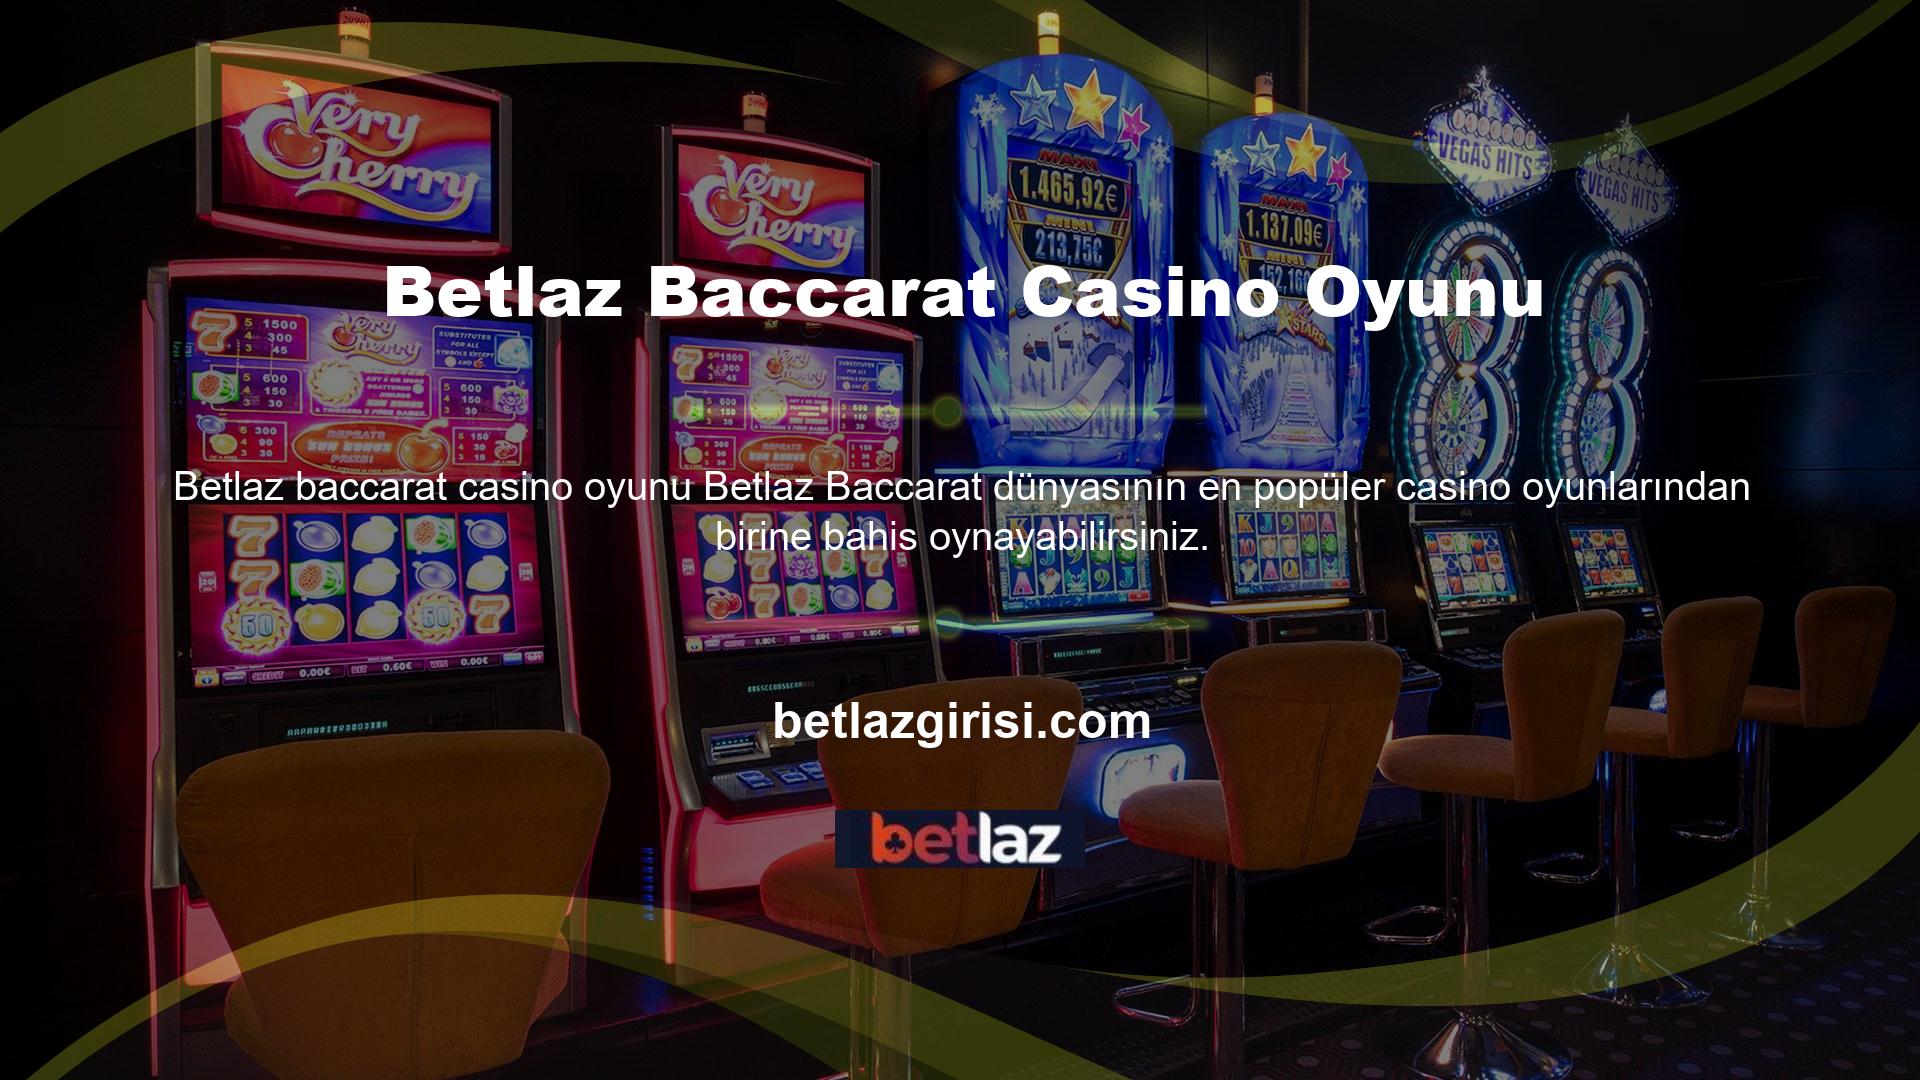 Casinonun çeşitli alanlarında oynanan çok sevilen bir oyun olan Baccarat, önemli kazançlar sağlayabilir